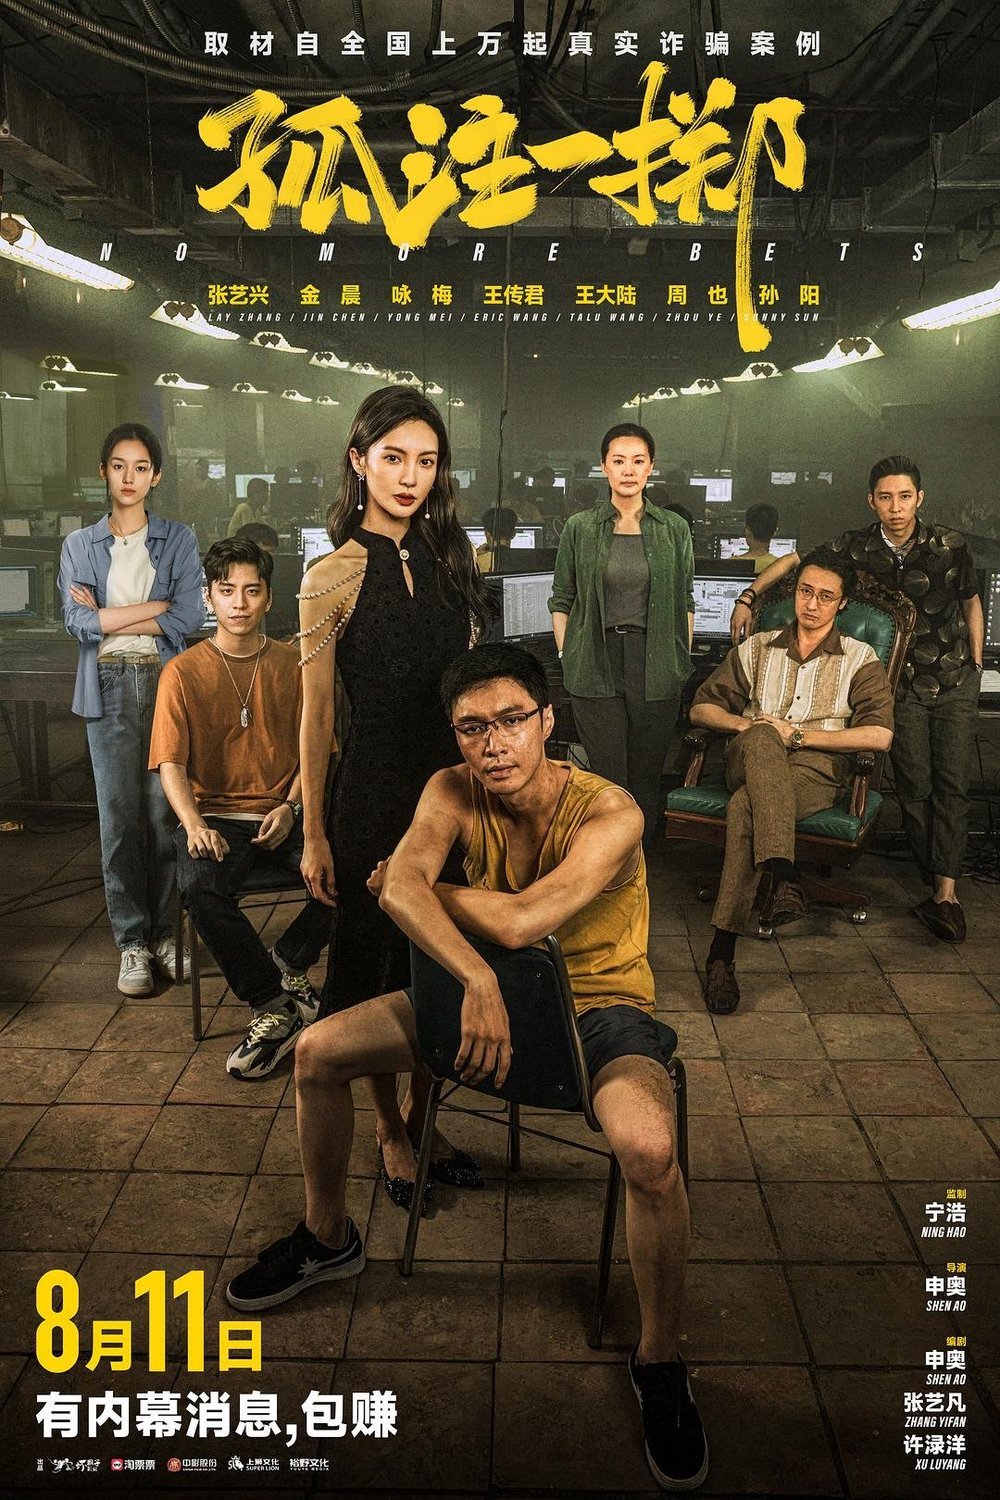 Mandarin poster of the movie Gu zhu yi zhi